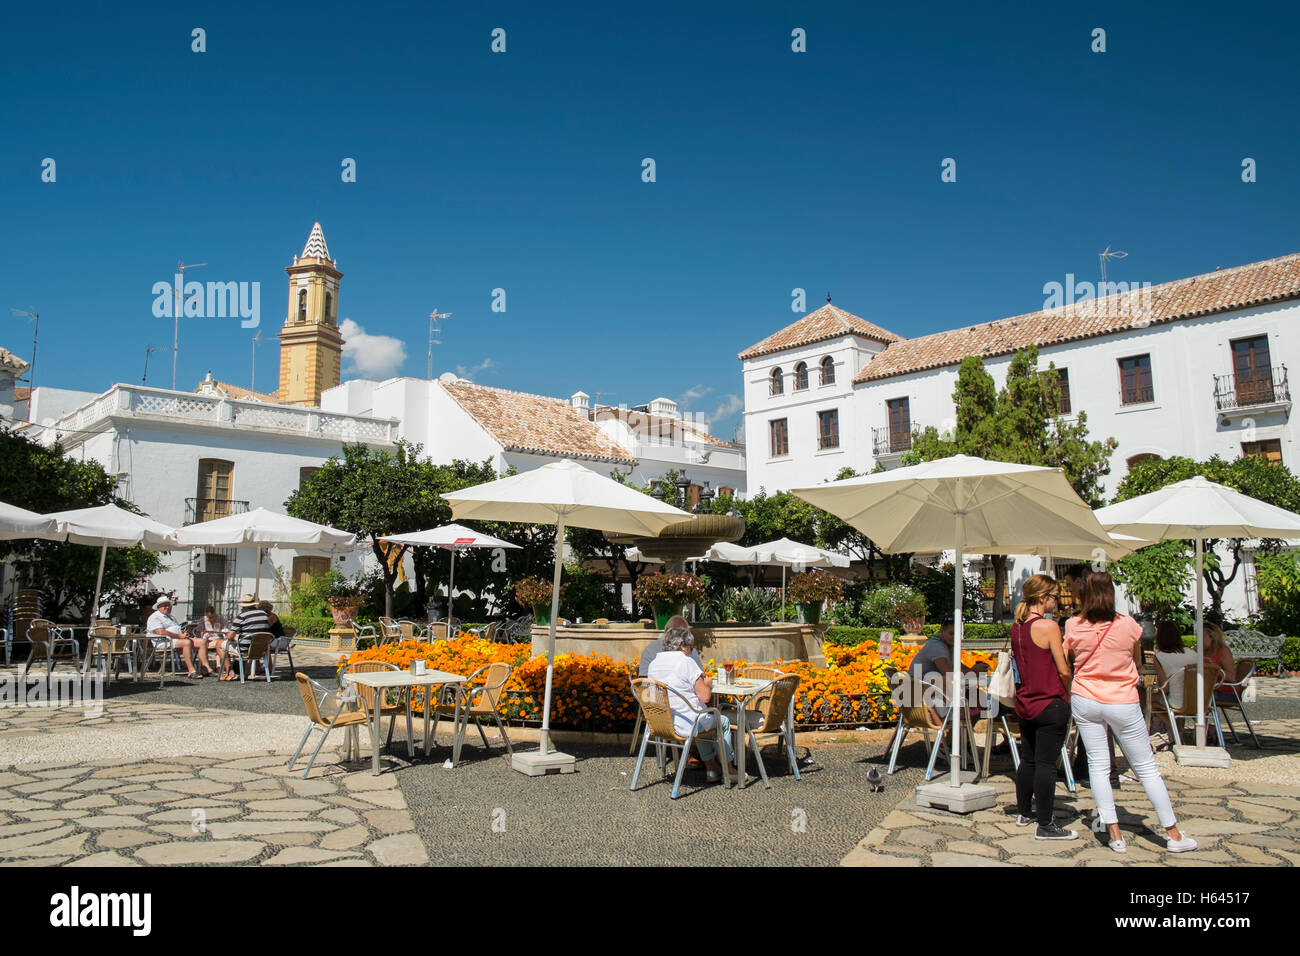 Plaza Las Flores, Estepona, Costa del Sol, Malaga Province, Andalusia, Spain Stock Photo